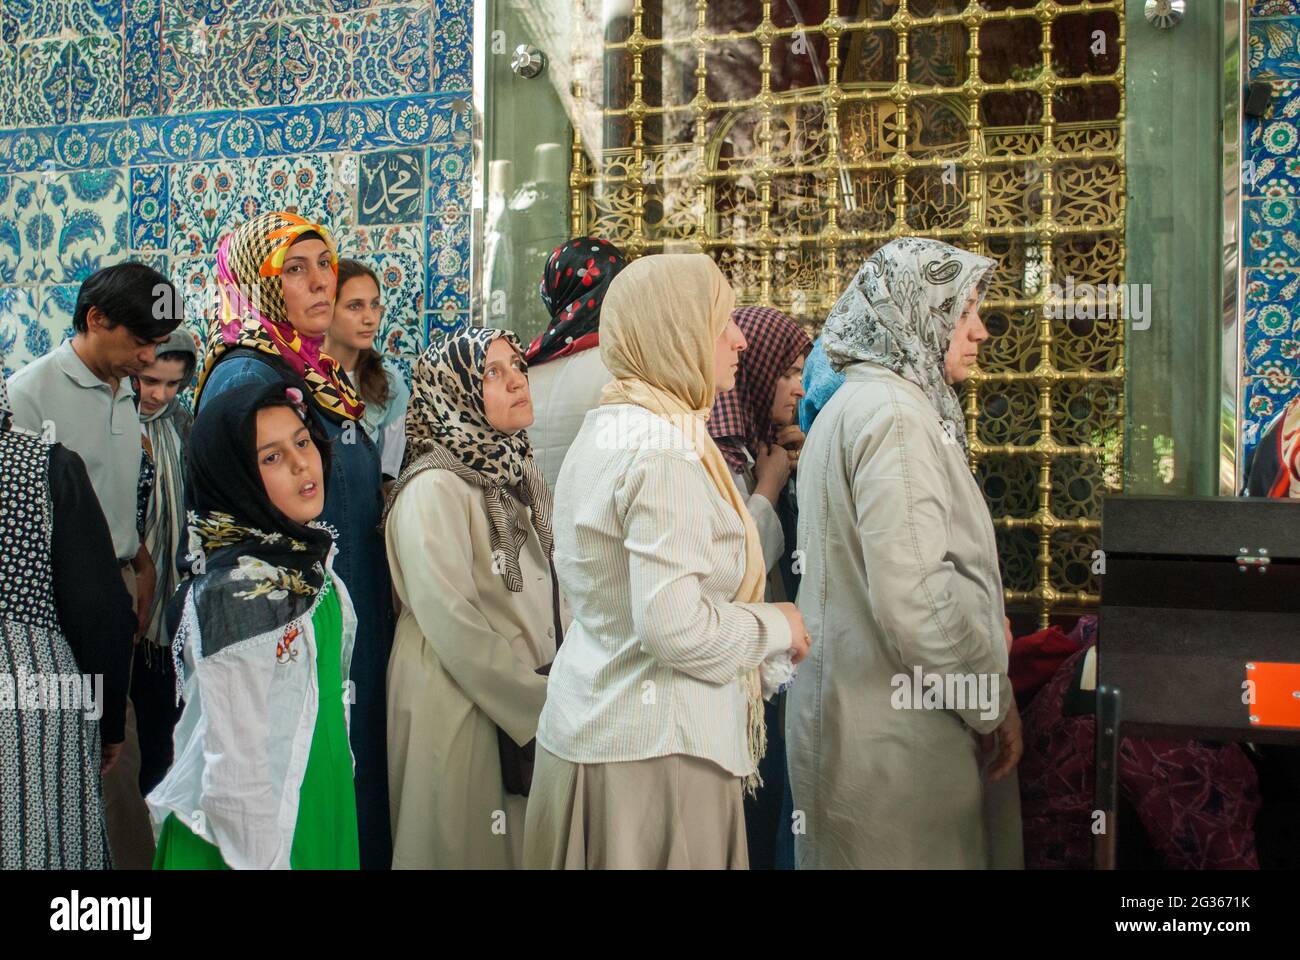 Eyup,İstanbul/Turkey - 13/6/2008:donne musulmane nella Moschea del Sultano di Eyup Foto Stock